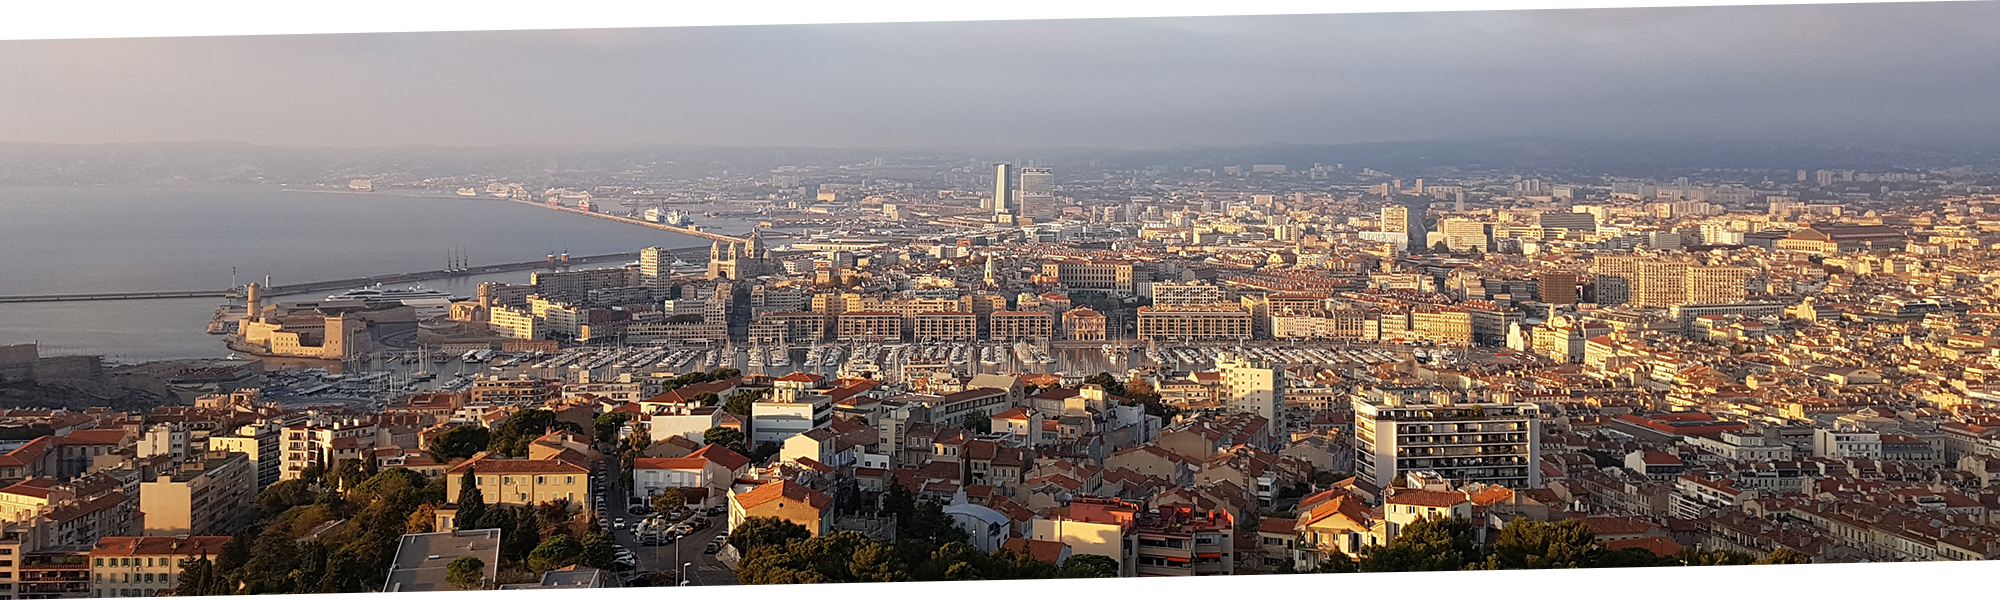 Photo panoramique de Marseille, zone à fort potentiel pour l’immobilier patrimonial, domaine rédactionnel d’expertise de Methys Patrimoine